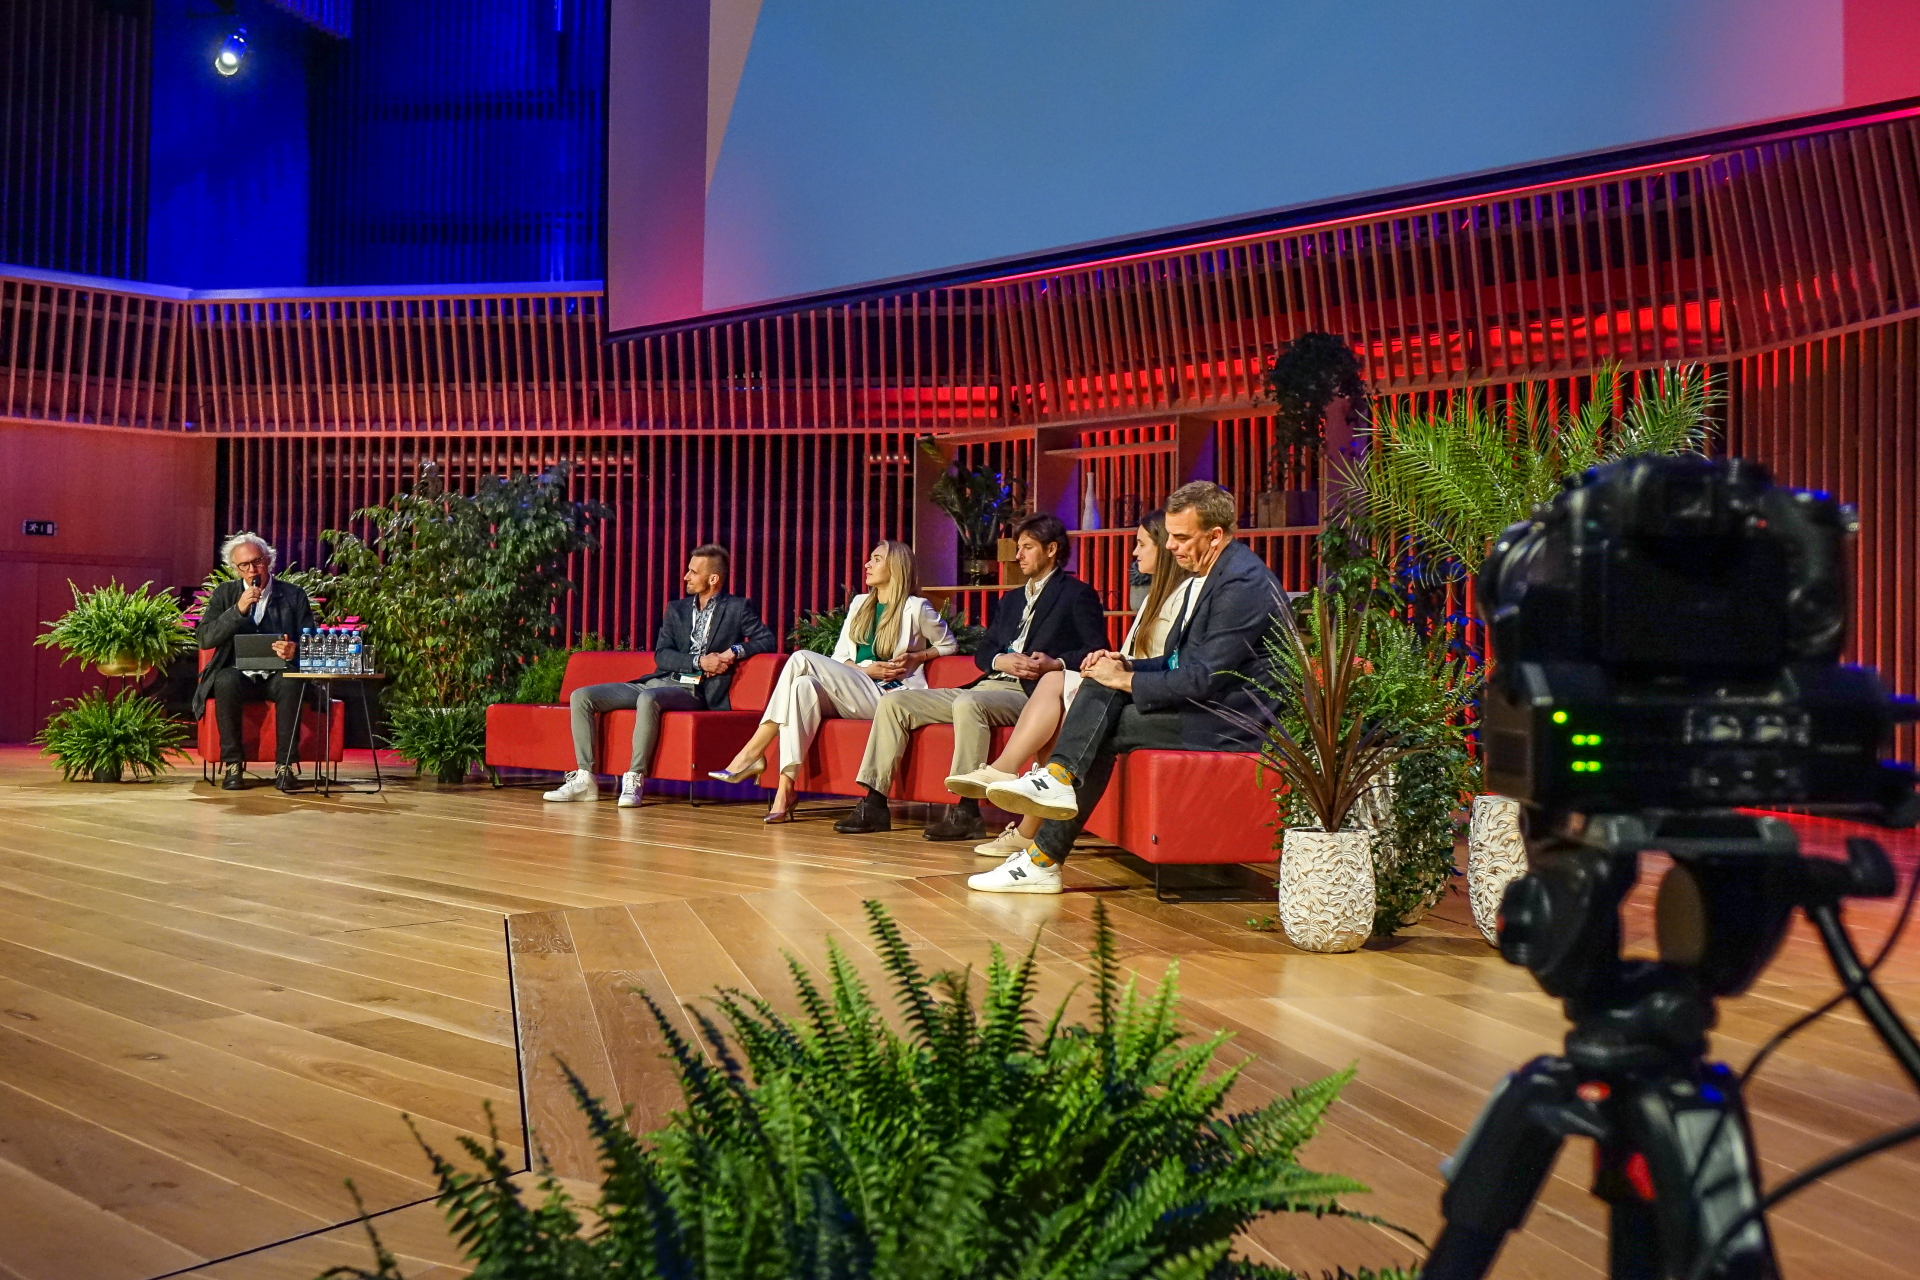 Kurzemes biznesa foruma paneļdiskusija - uz skatuves redzasm diskusijas vadītājs un 5 paneļdiskusijas dalībnieki, kas sēž rozā krēslos.